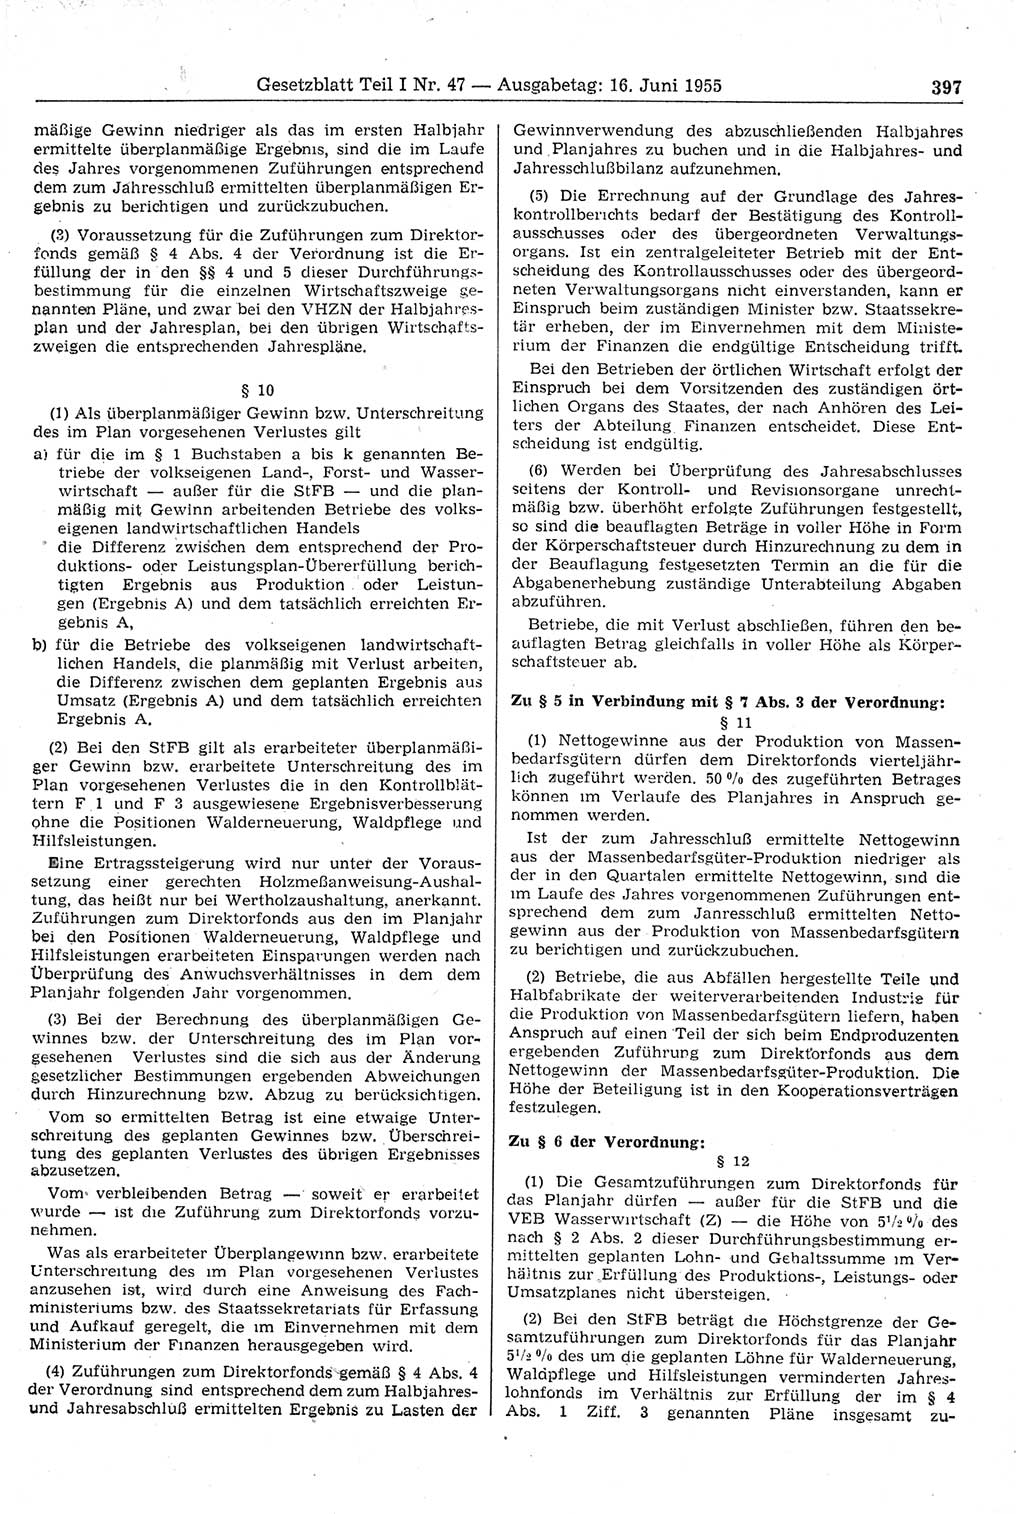 Gesetzblatt (GBl.) der Deutschen Demokratischen Republik (DDR) Teil Ⅰ 1955, Seite 397 (GBl. DDR Ⅰ 1955, S. 397)